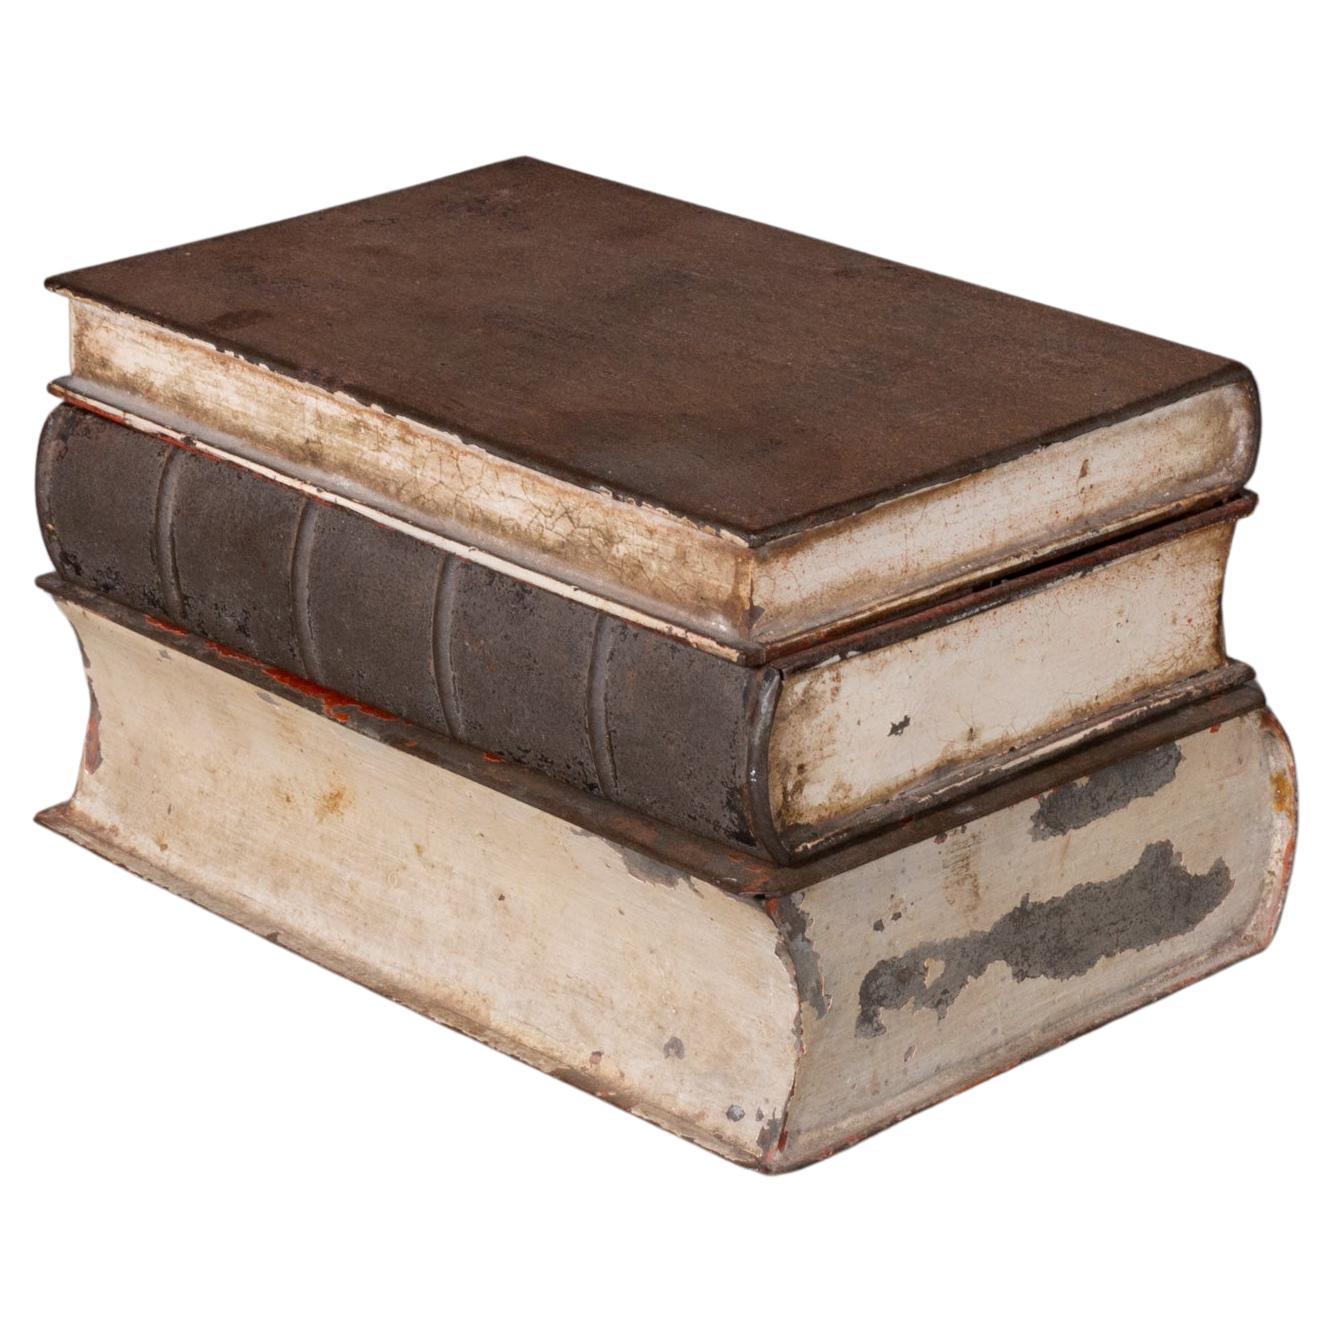 Des livres anciens en métal vieilli avec un puits d'encre de voyage c.1900-1920 (FREE SHIP)